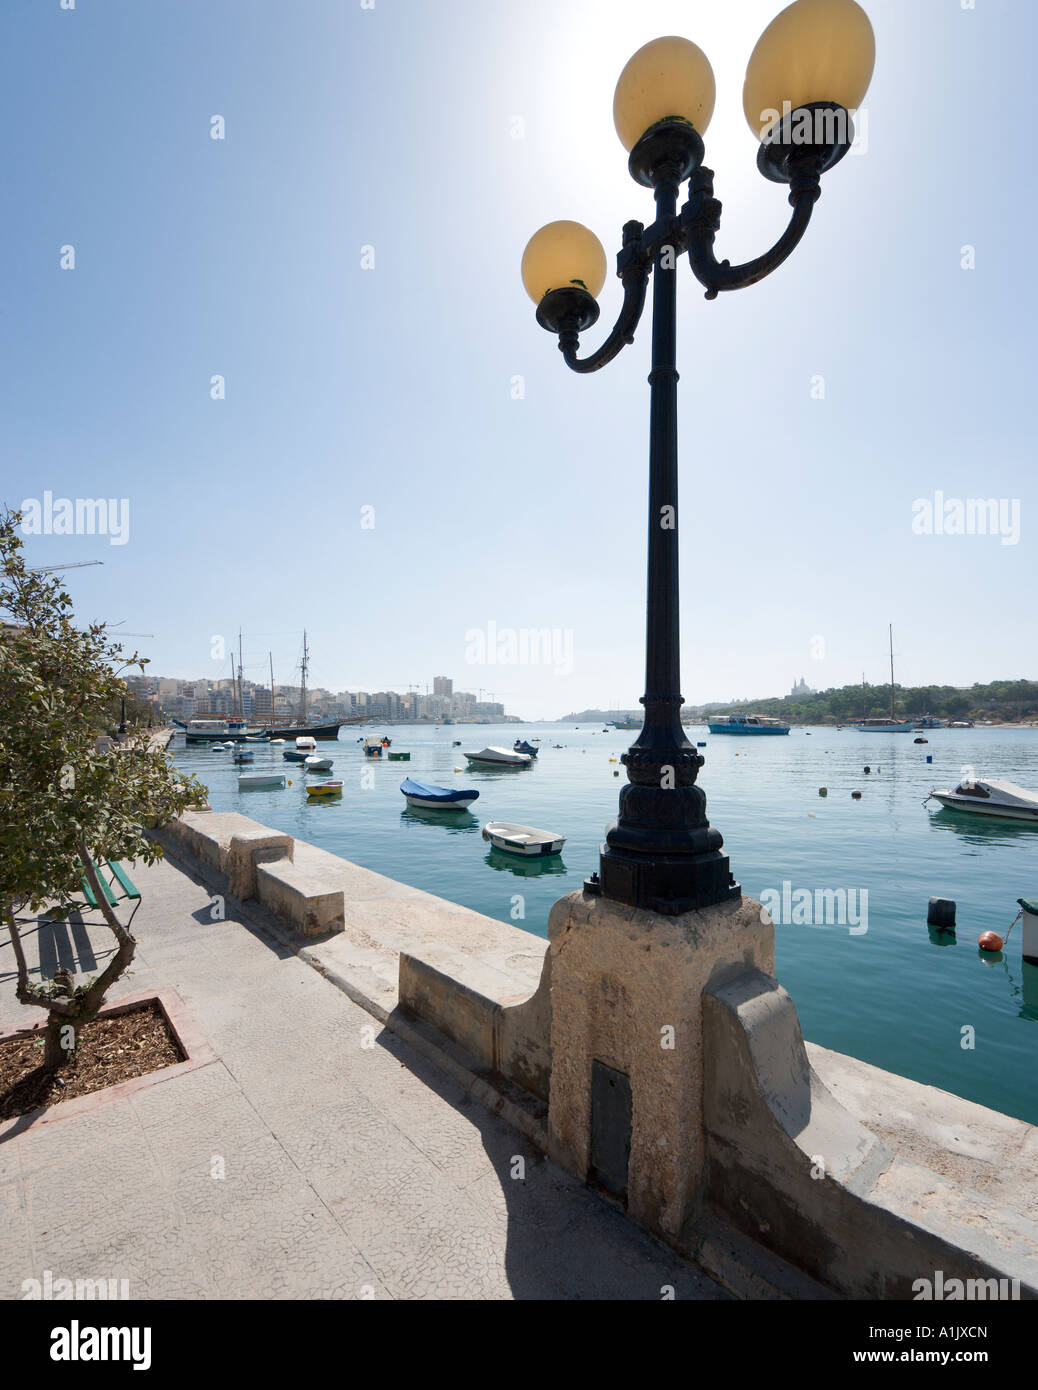 Seafront Promenade in Sliema, Malta Stock Photo